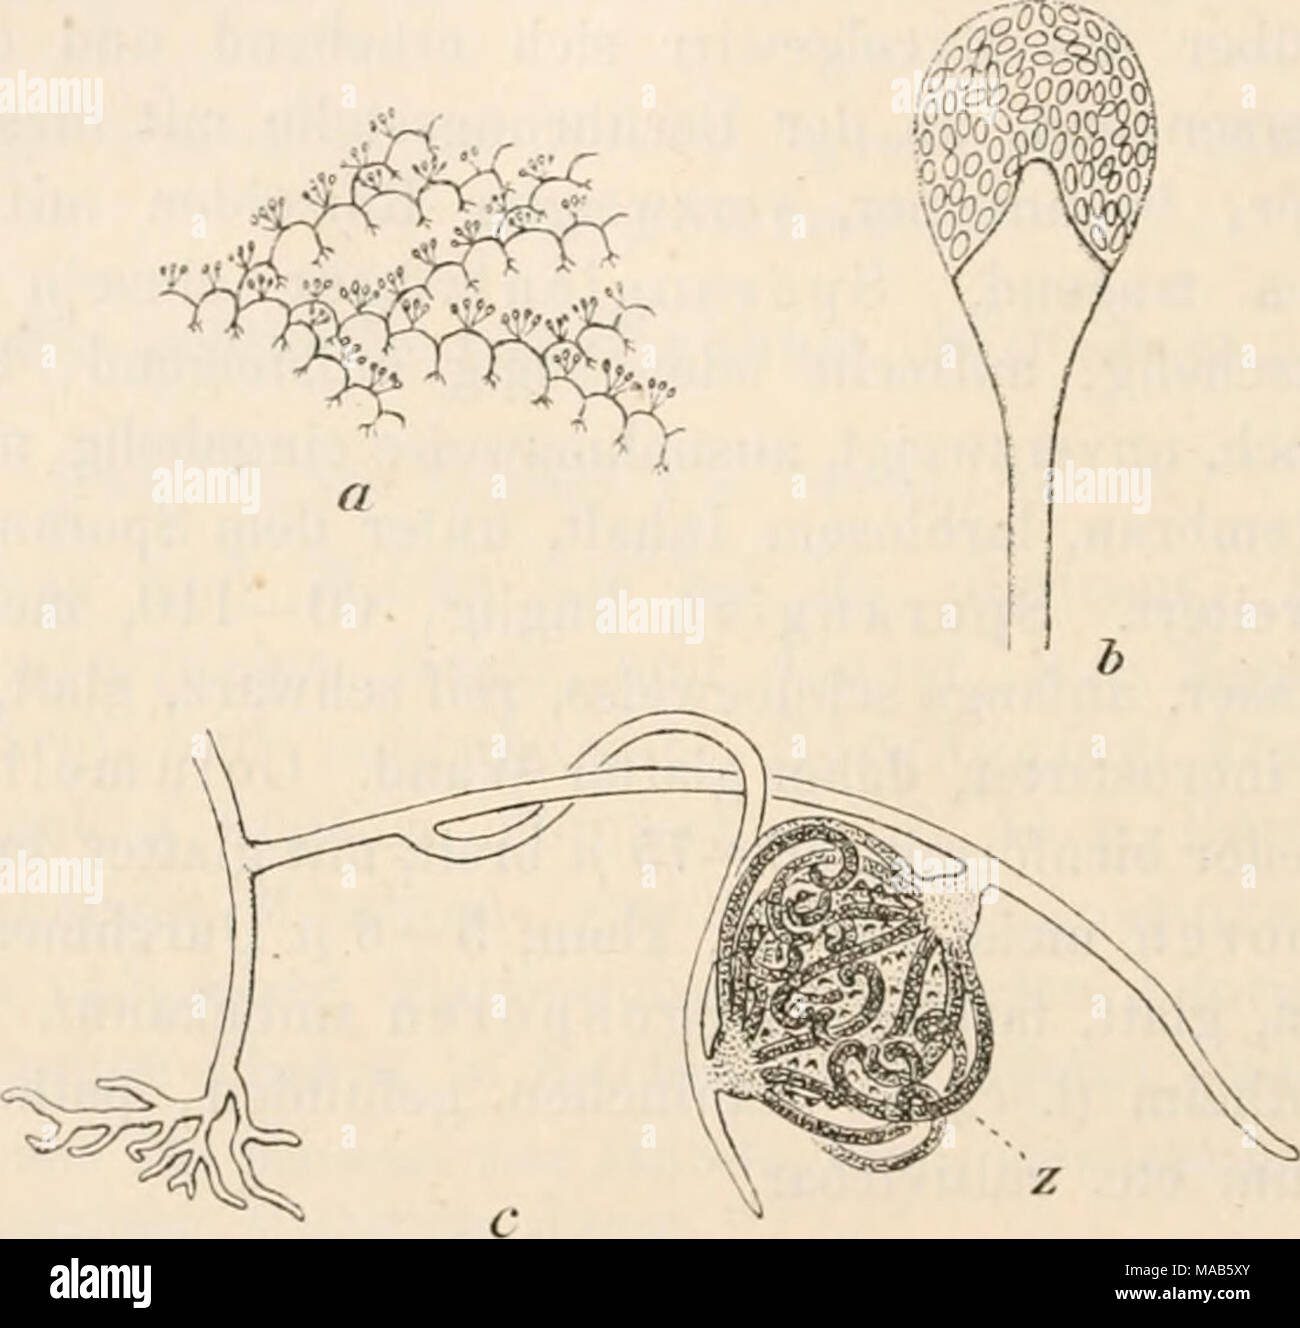 . Dr. L. Rabenhorst's Kryptogamen-Flora von Deutschland, Oesterreich und der Schweiz . Absidia. — a A. capillata. Eine Gruppe von Ausläufern mit bewurzelten Knoten und bogig gewölbten Internodien, auf deren Scheitel ein Sporangienbüschel steht (ungefähr natürliche Grösse, nach van Tiegheni). b A. capillata. Ein einzelnes Sporangiuni mit konischer Columella und Apophyse (Vergr. ca. 250, nach van Tieghem). c A. septata. Die bewurzelte Basis eines Ausläufers, über der ein neuer verzweigter Ausläufer entspringt, der eine Zygospore {z) trägt; diese ist eingehüllt in bischofstabartig gekrümmte Auswü Stock Photo